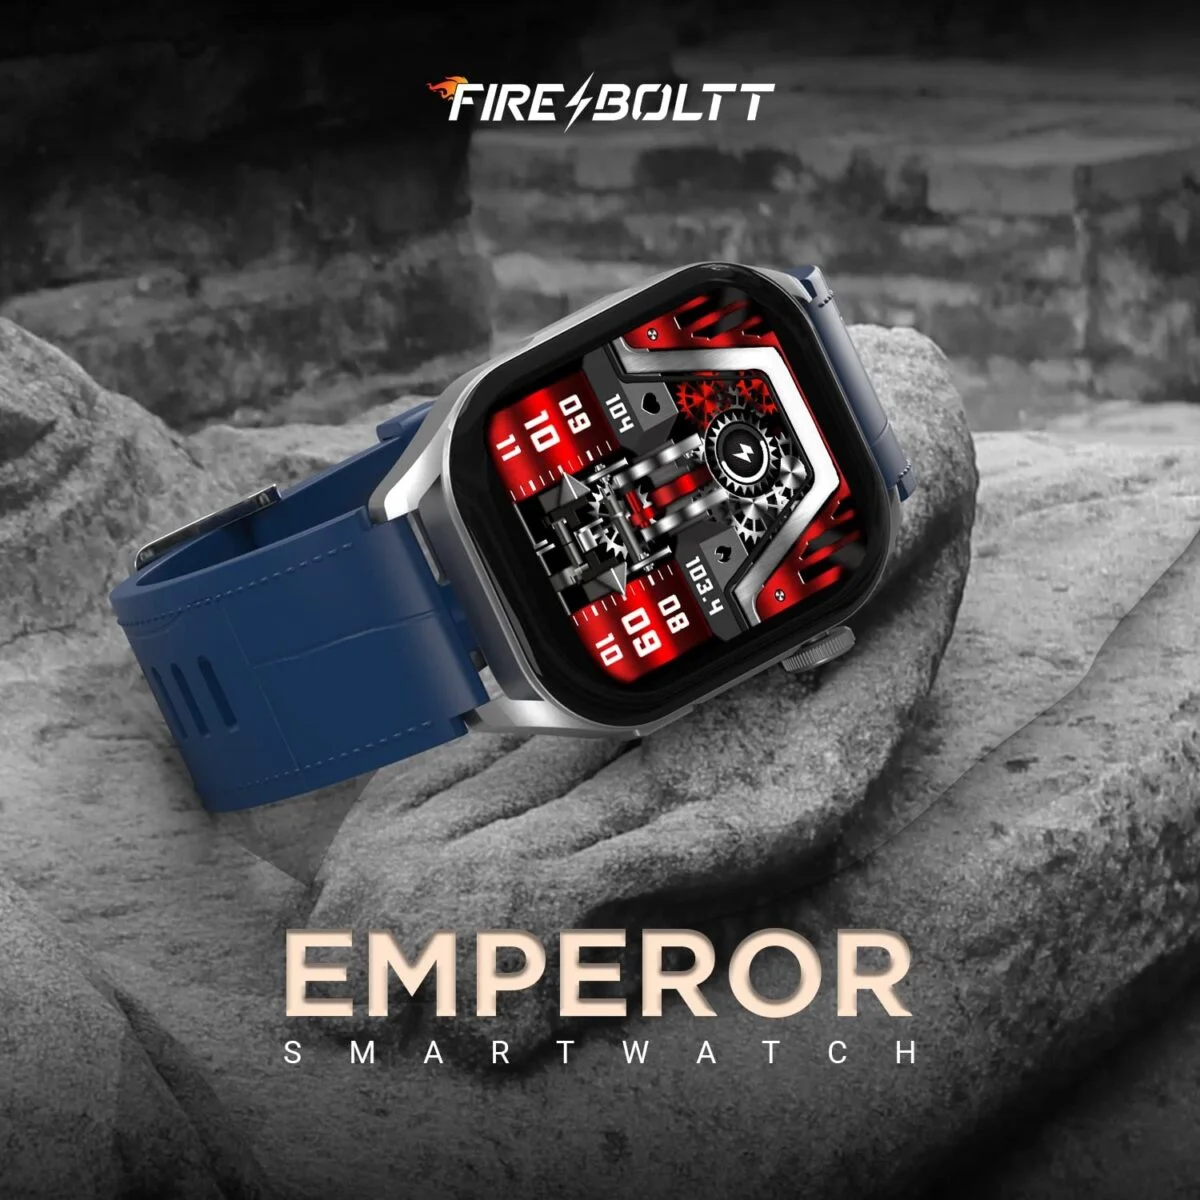 Fire boltt emperor bluetooth calling smartwatch 10 fire-boltt emperor bluetooth calling smartwatch